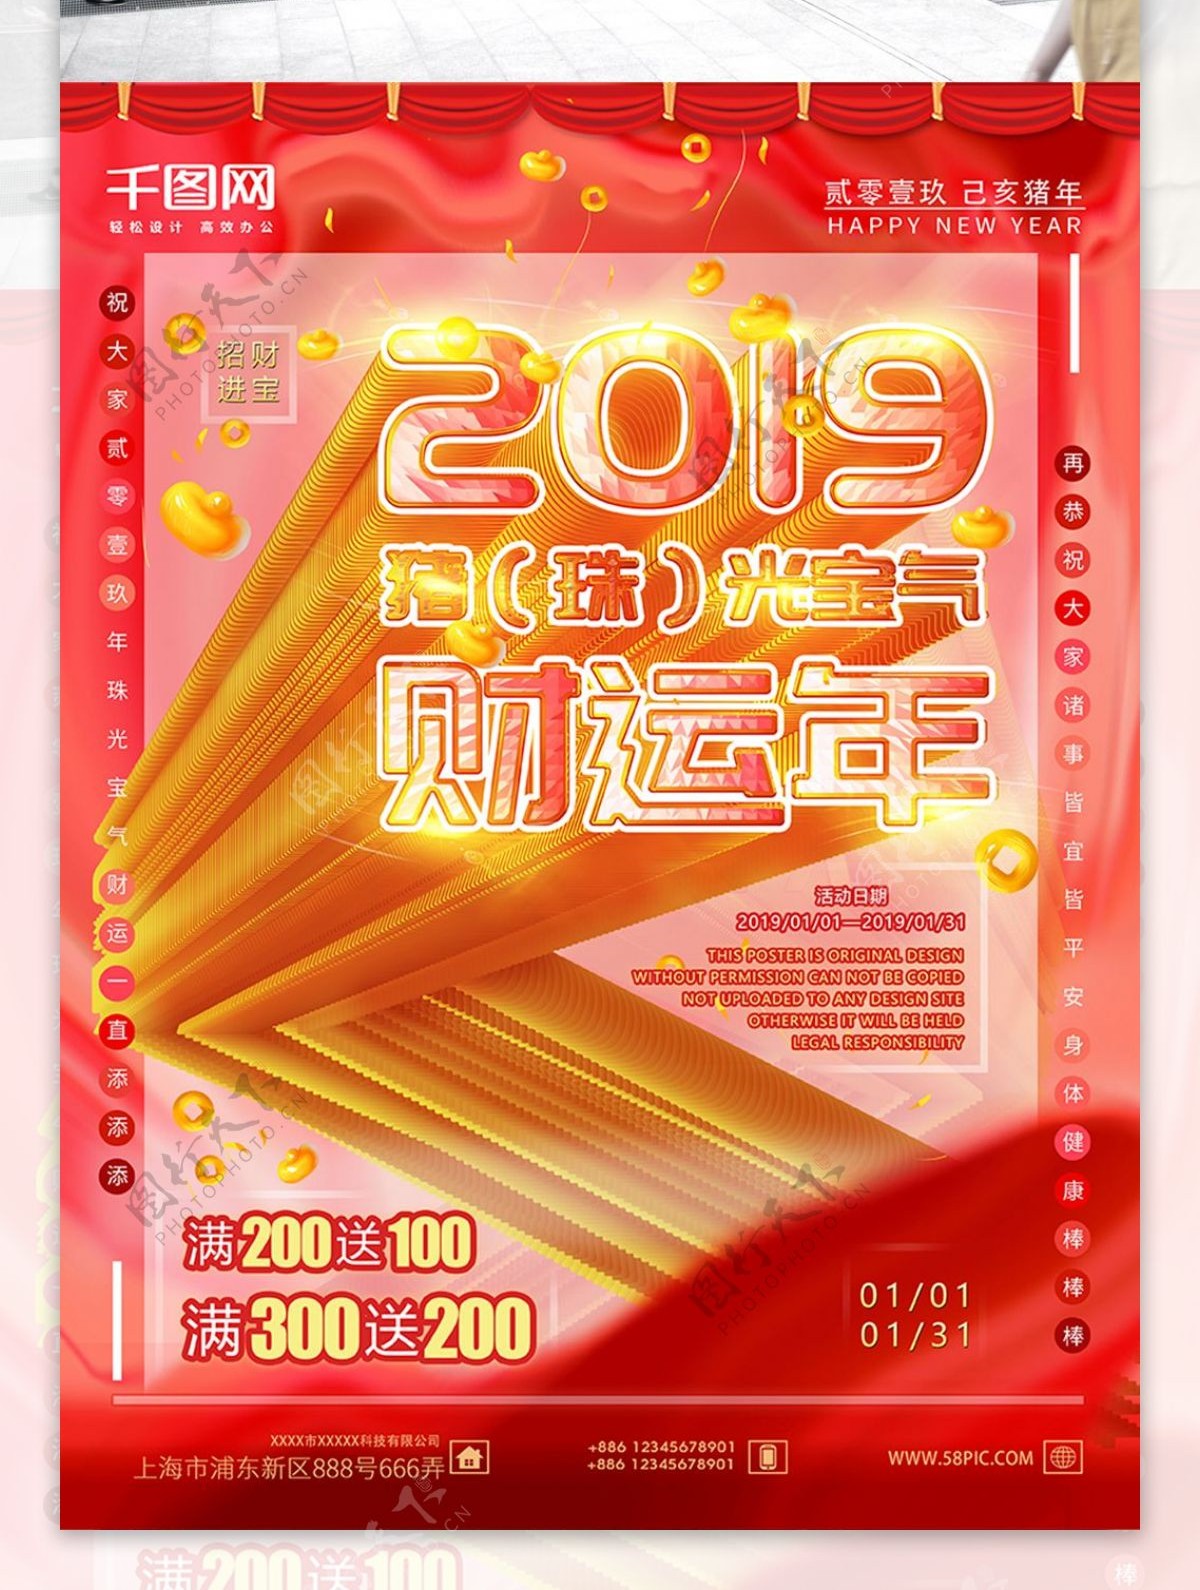 可商用珊瑚红色调原创2019新年海报设计